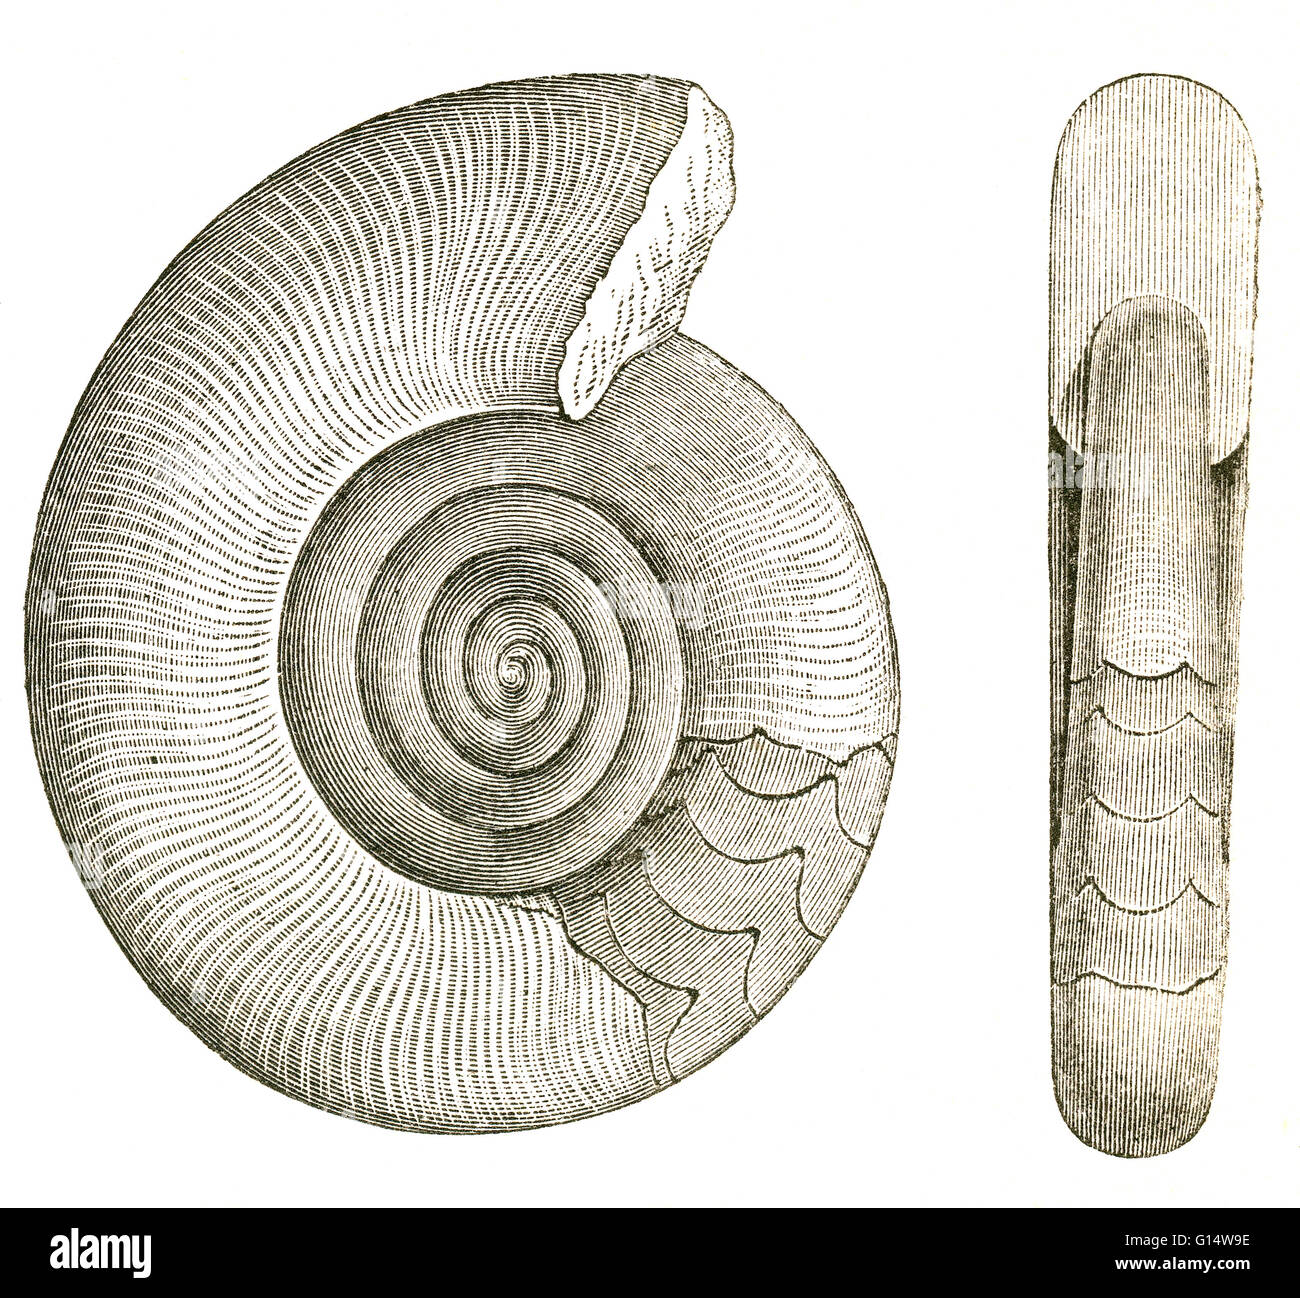 Zwei Ansichten von einer ausgestorbenen Ammoniten (Clymenia Sedgwickii), die während der Devon lebte.  Illustration von Louis Figuiers die Welt vor der Sintflut, 1867 amerikanische Ausgabe. Stockfoto